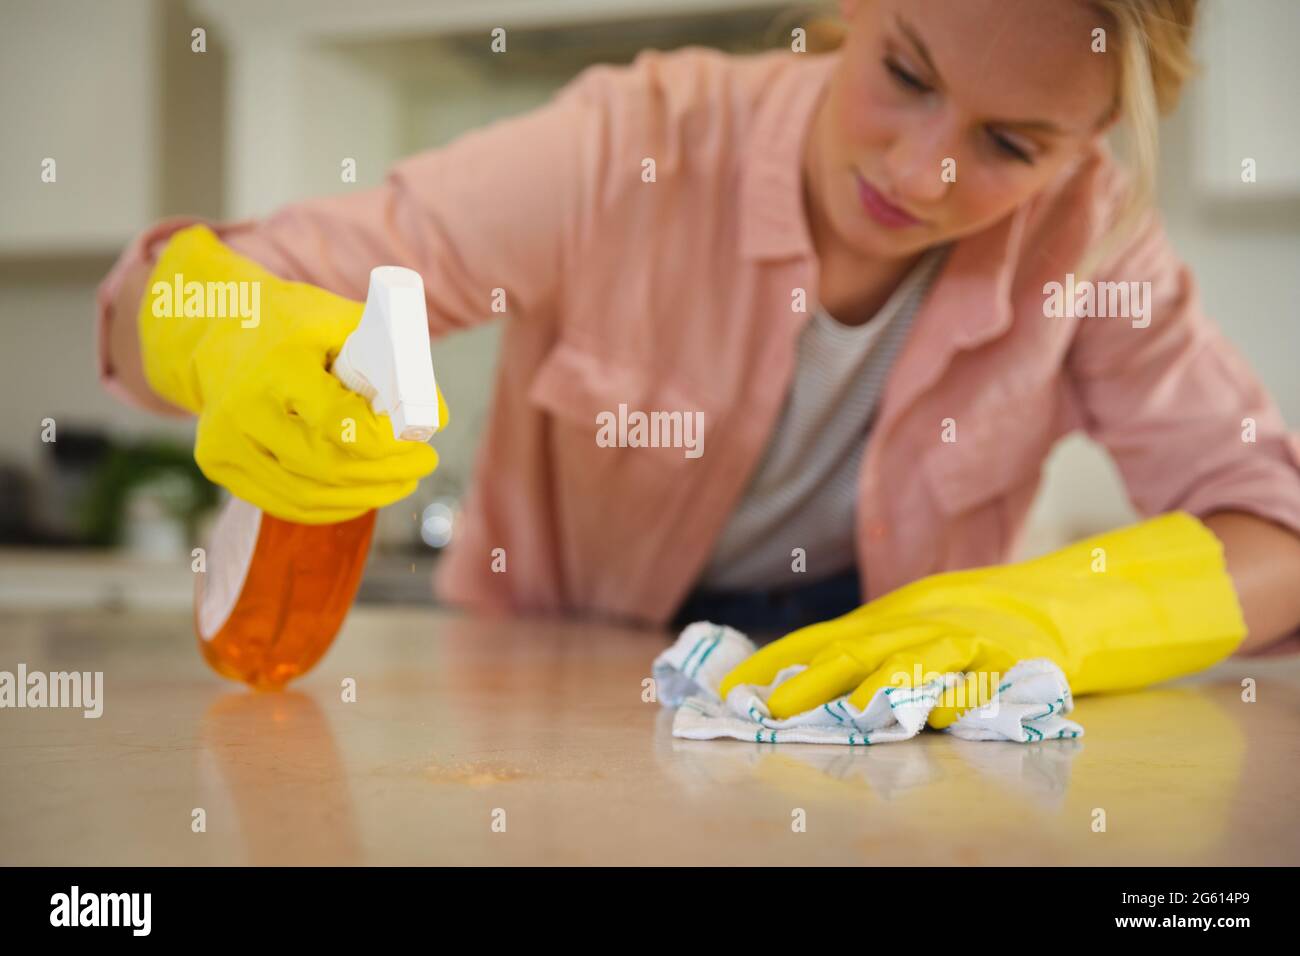 limpieza dama en caucho guantes esponja detergente interior